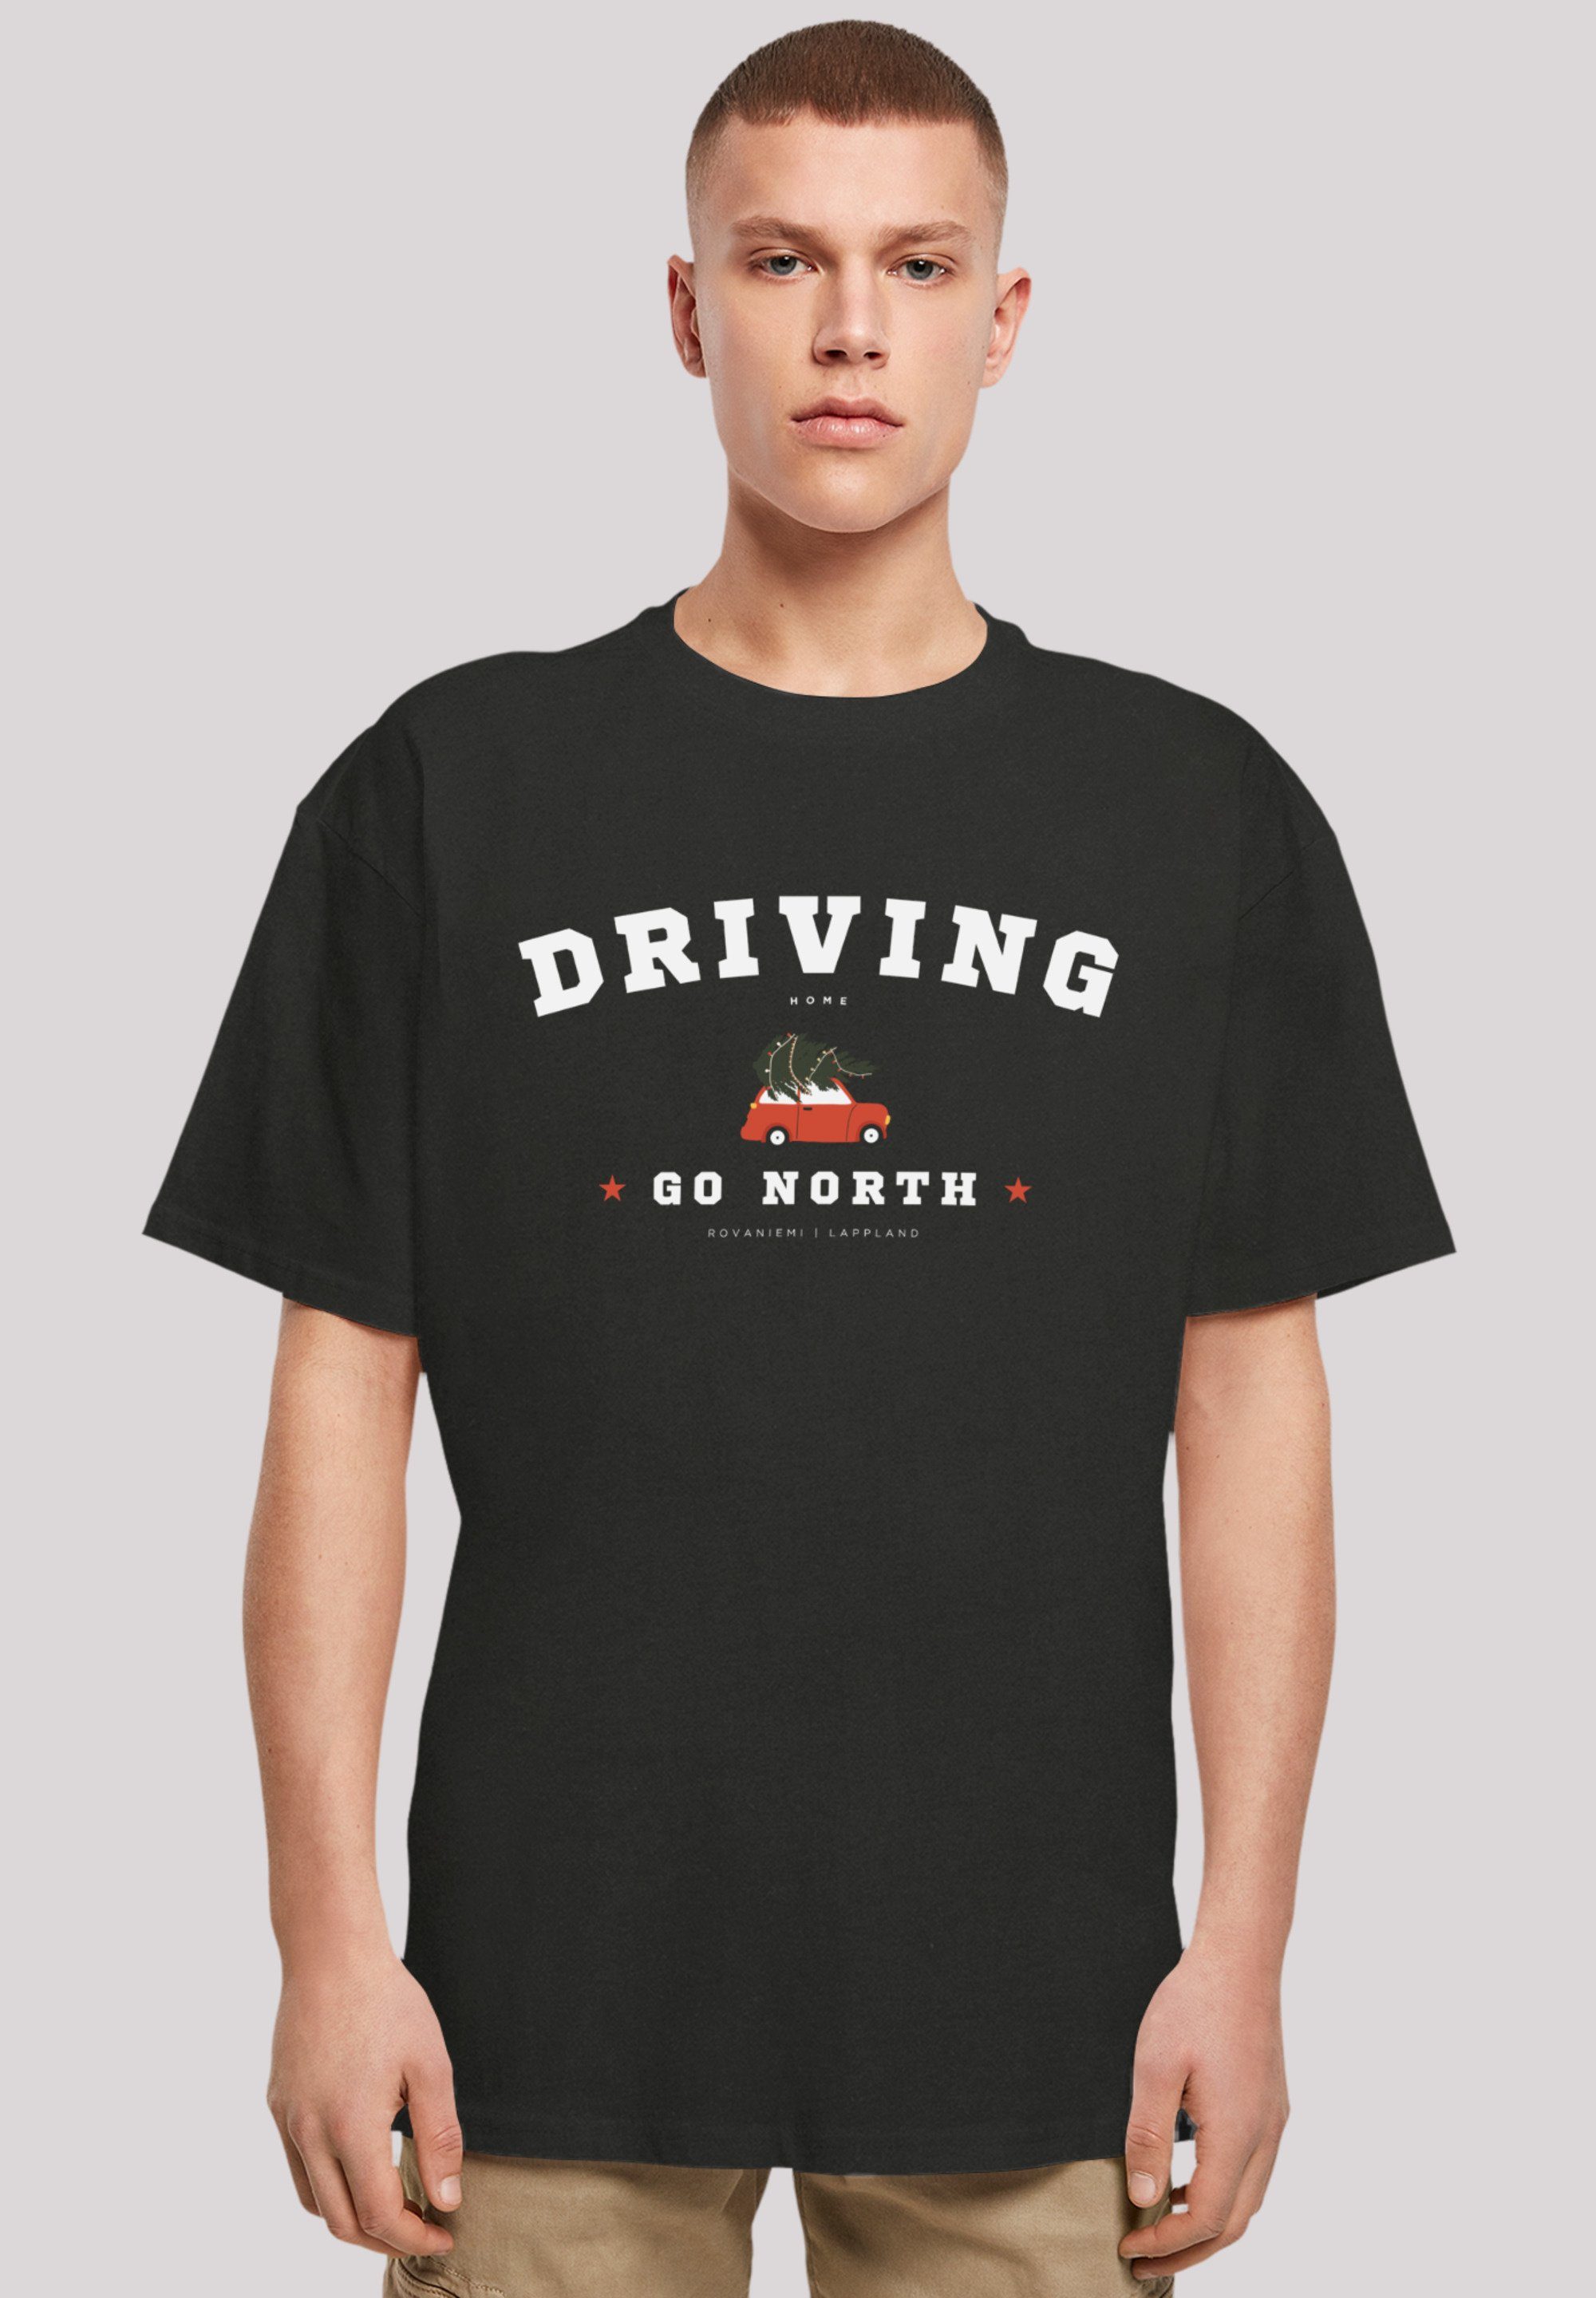 F4NT4STIC T-Shirt Driving Home Weihnachten Weihnachten, Geschenk, Logo schwarz